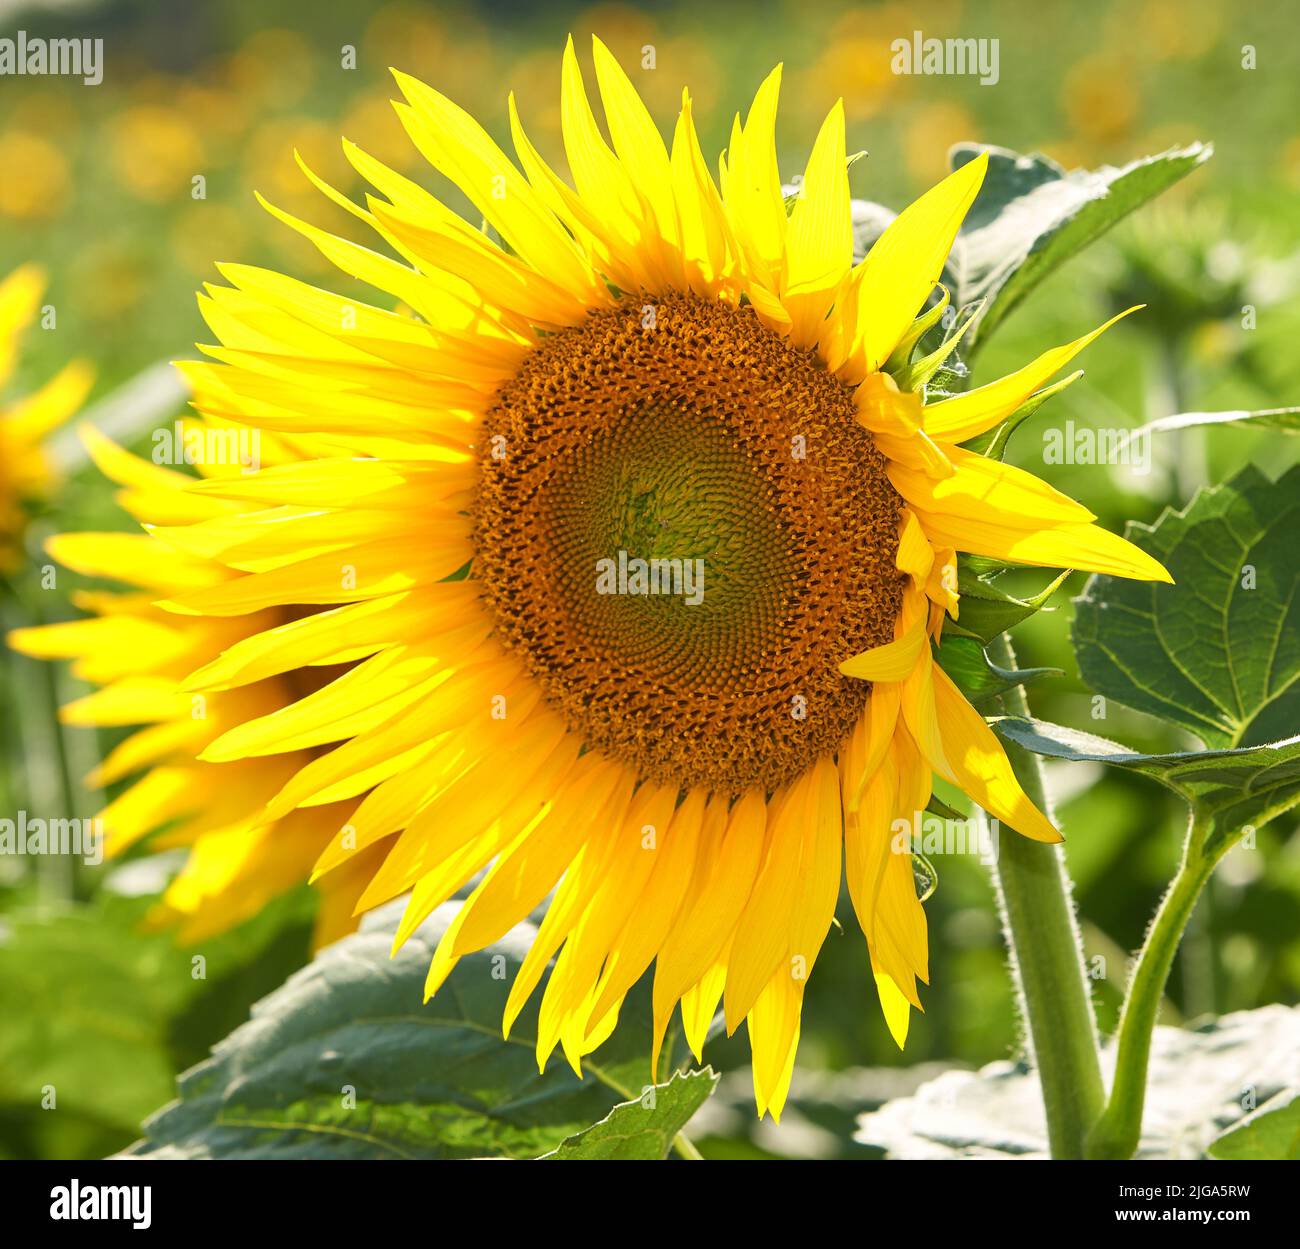 Eine Sonnenblume wächst auf einem Feld vor einem verschwommenen Naturhintergrund im Sommer. Eine einzige gelbe blühende Pflanze, die im Frühjahr auf einem grünen Feld blüht Stockfoto